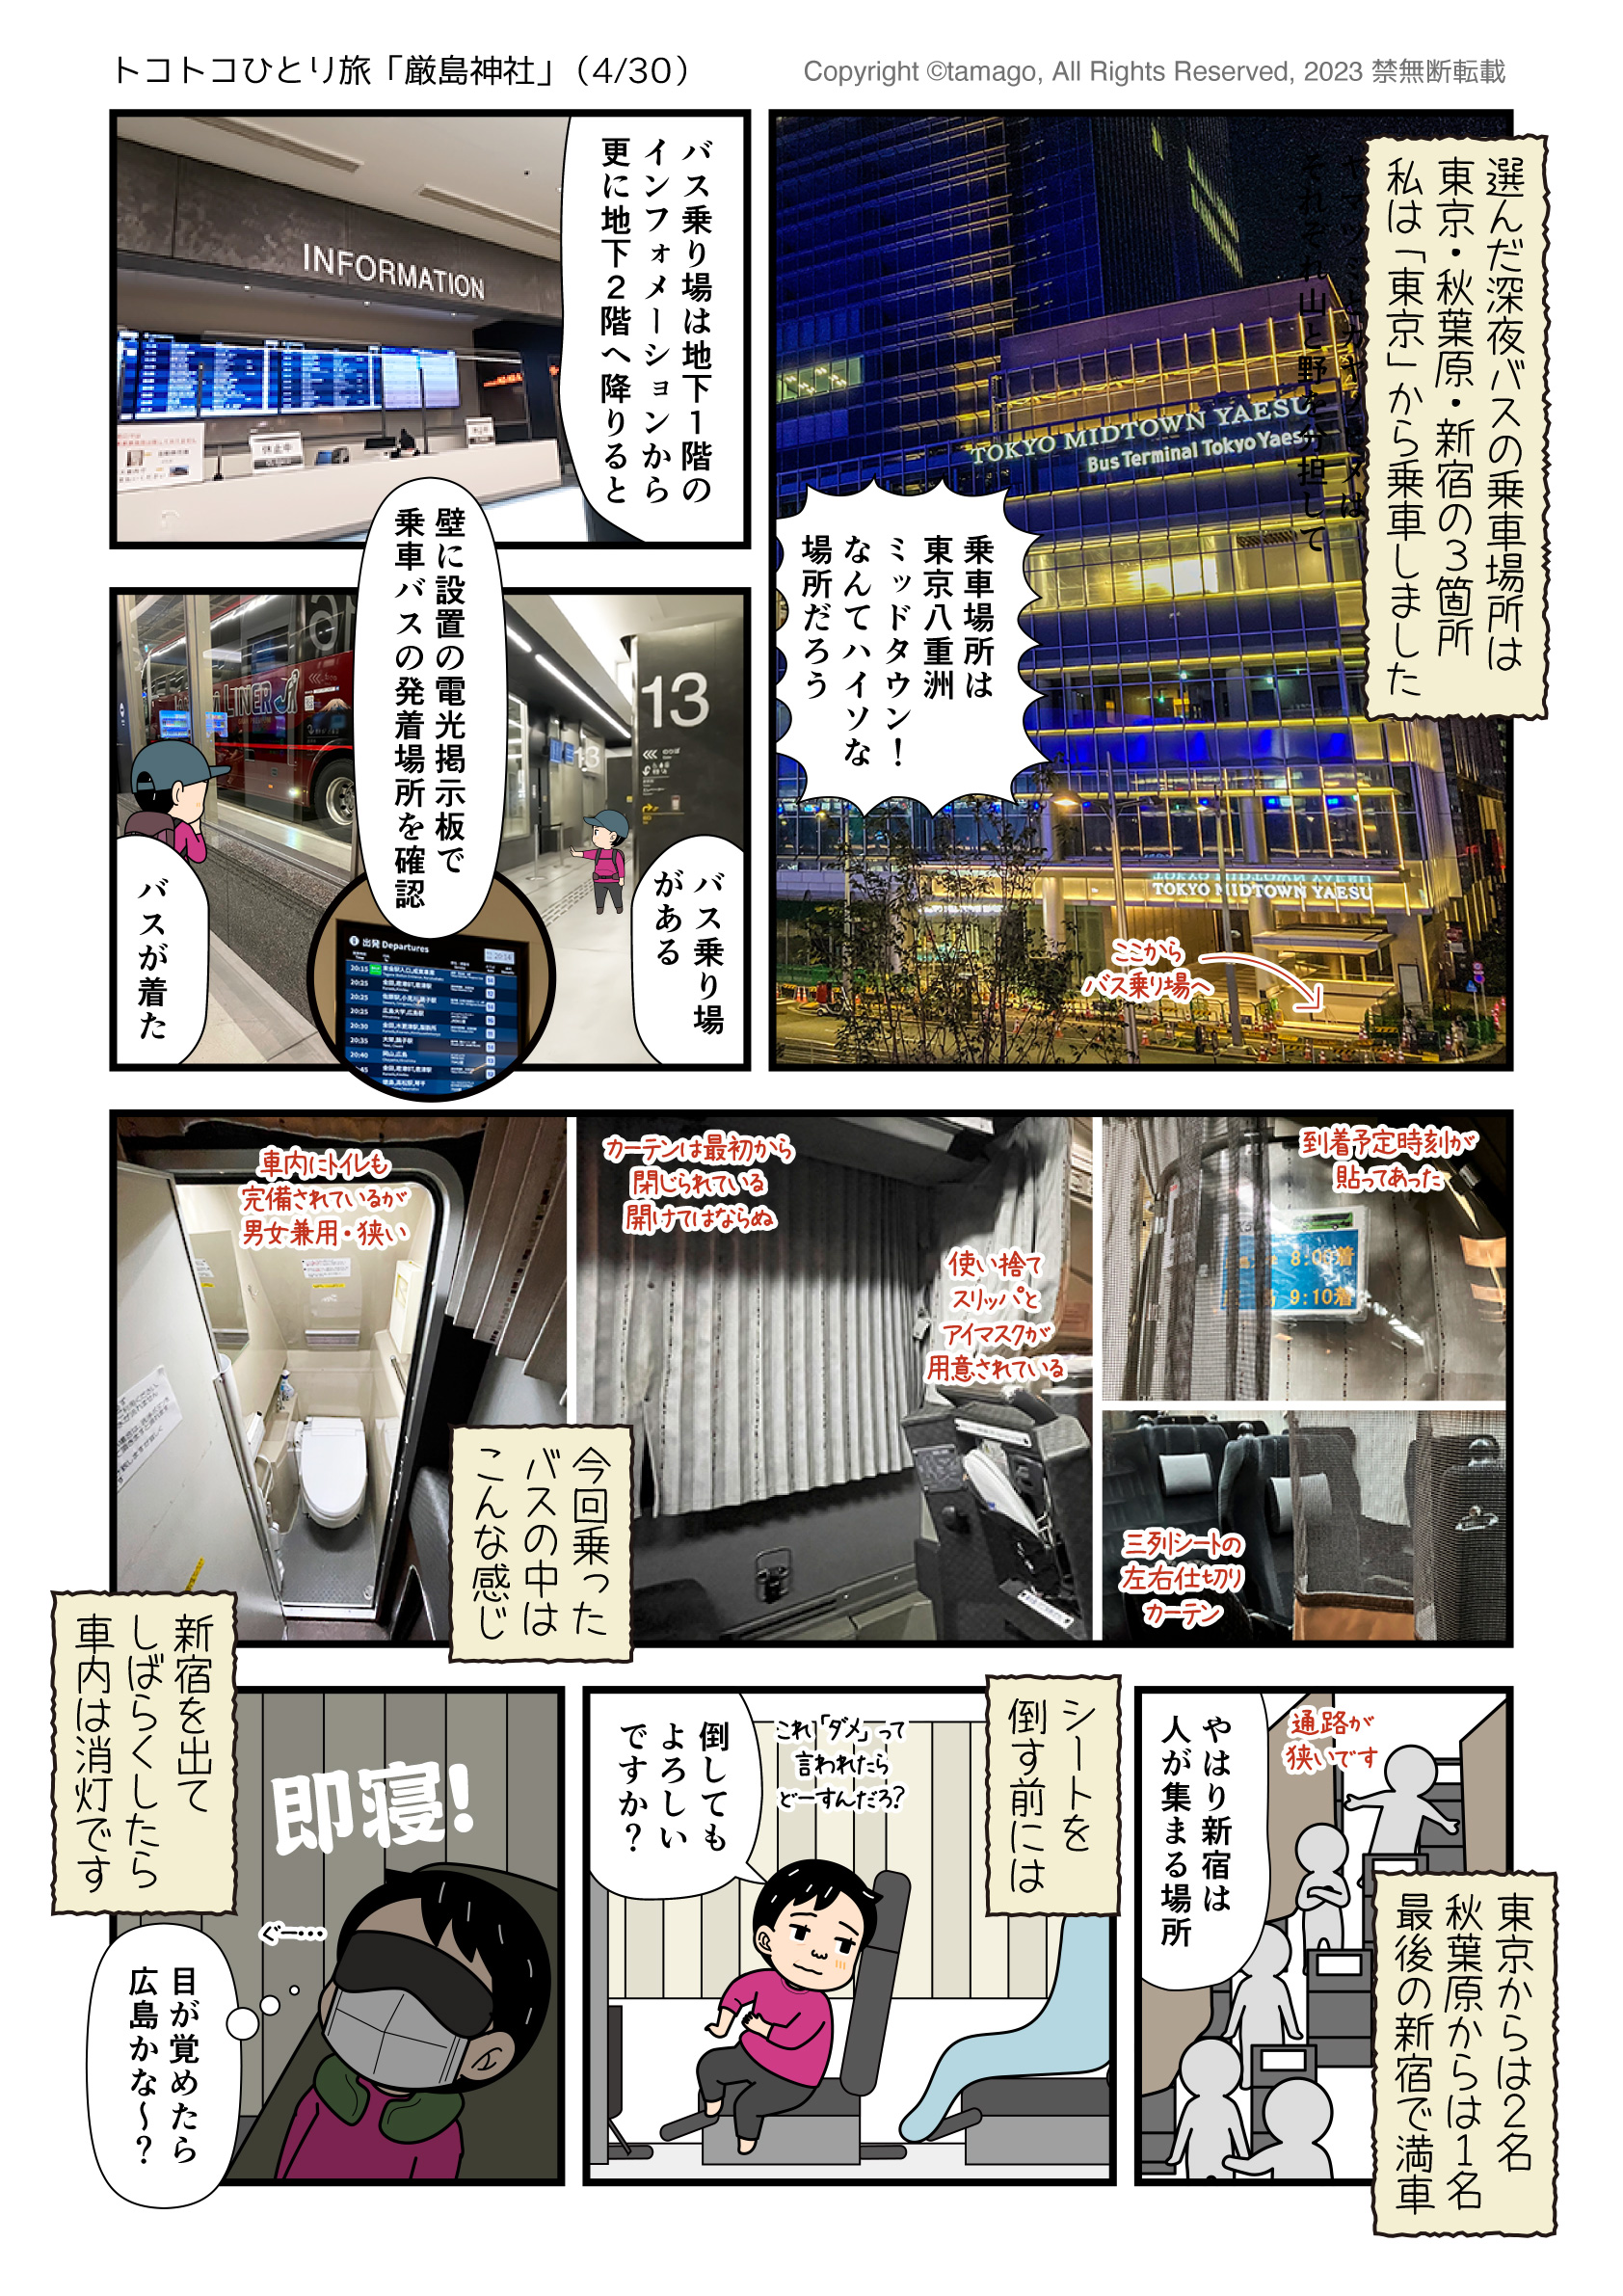 深夜バスを使って厳島神社へひとり旅に行った時のイラスト漫画レポ